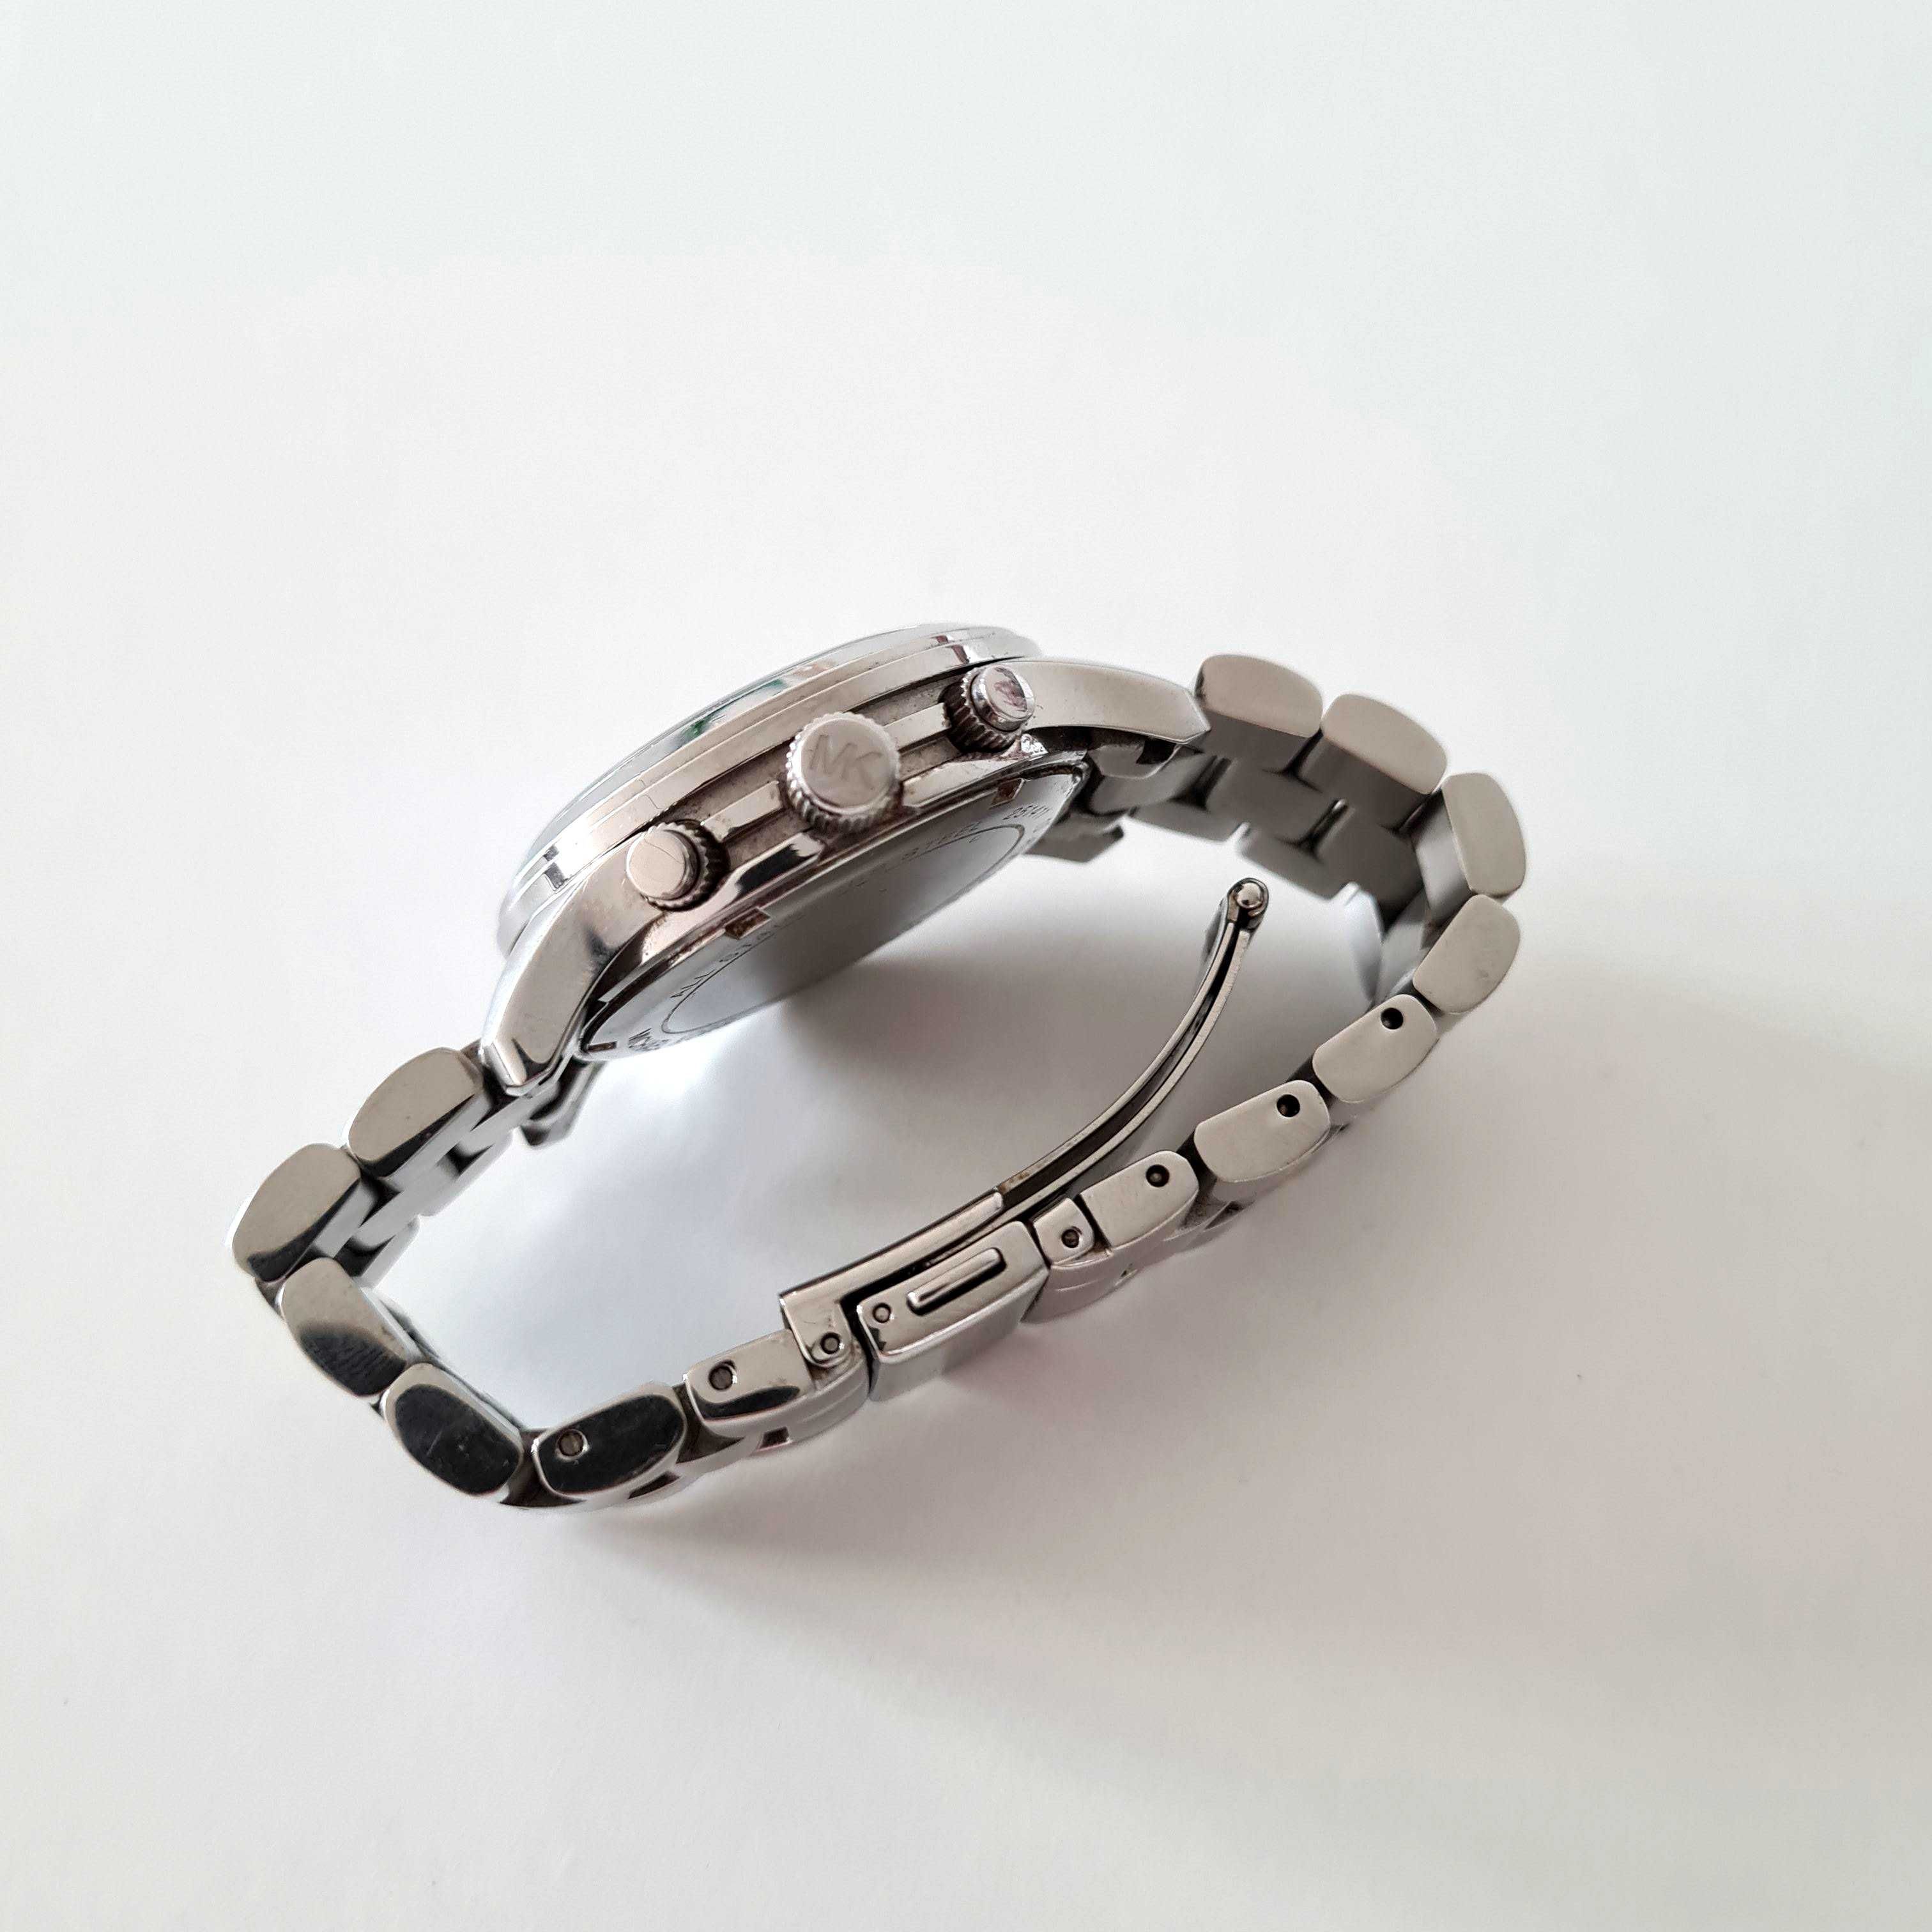 Michael Kors zegarek damski srebrny bransoleta MK5076